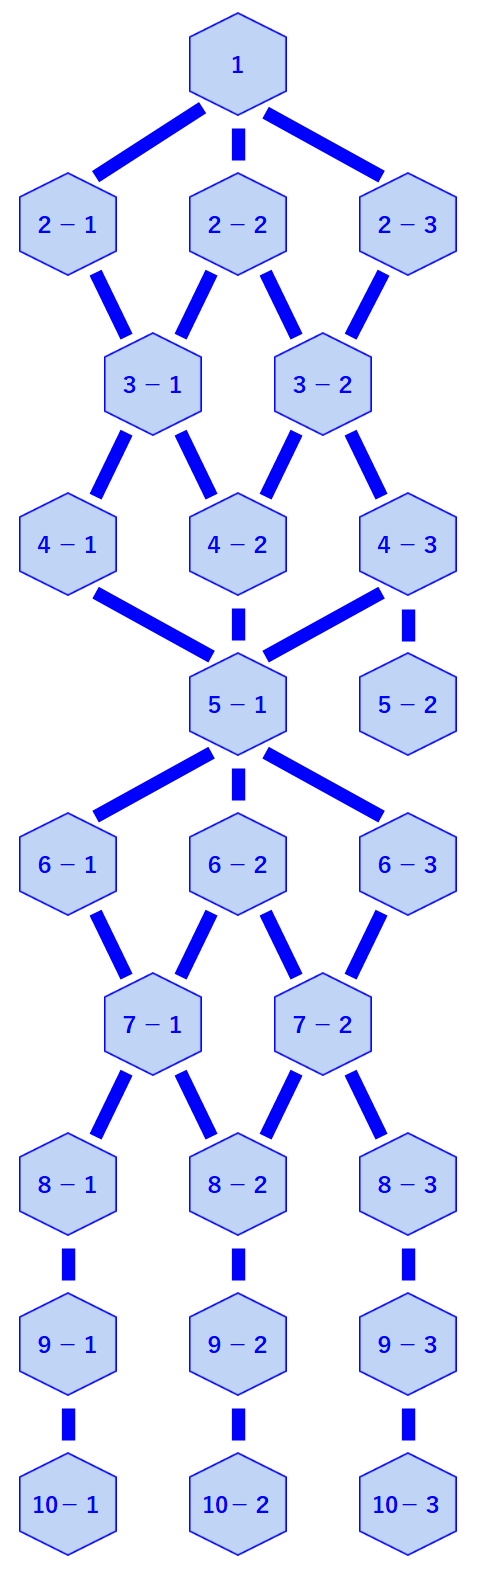 scientist-tree-diagram.png